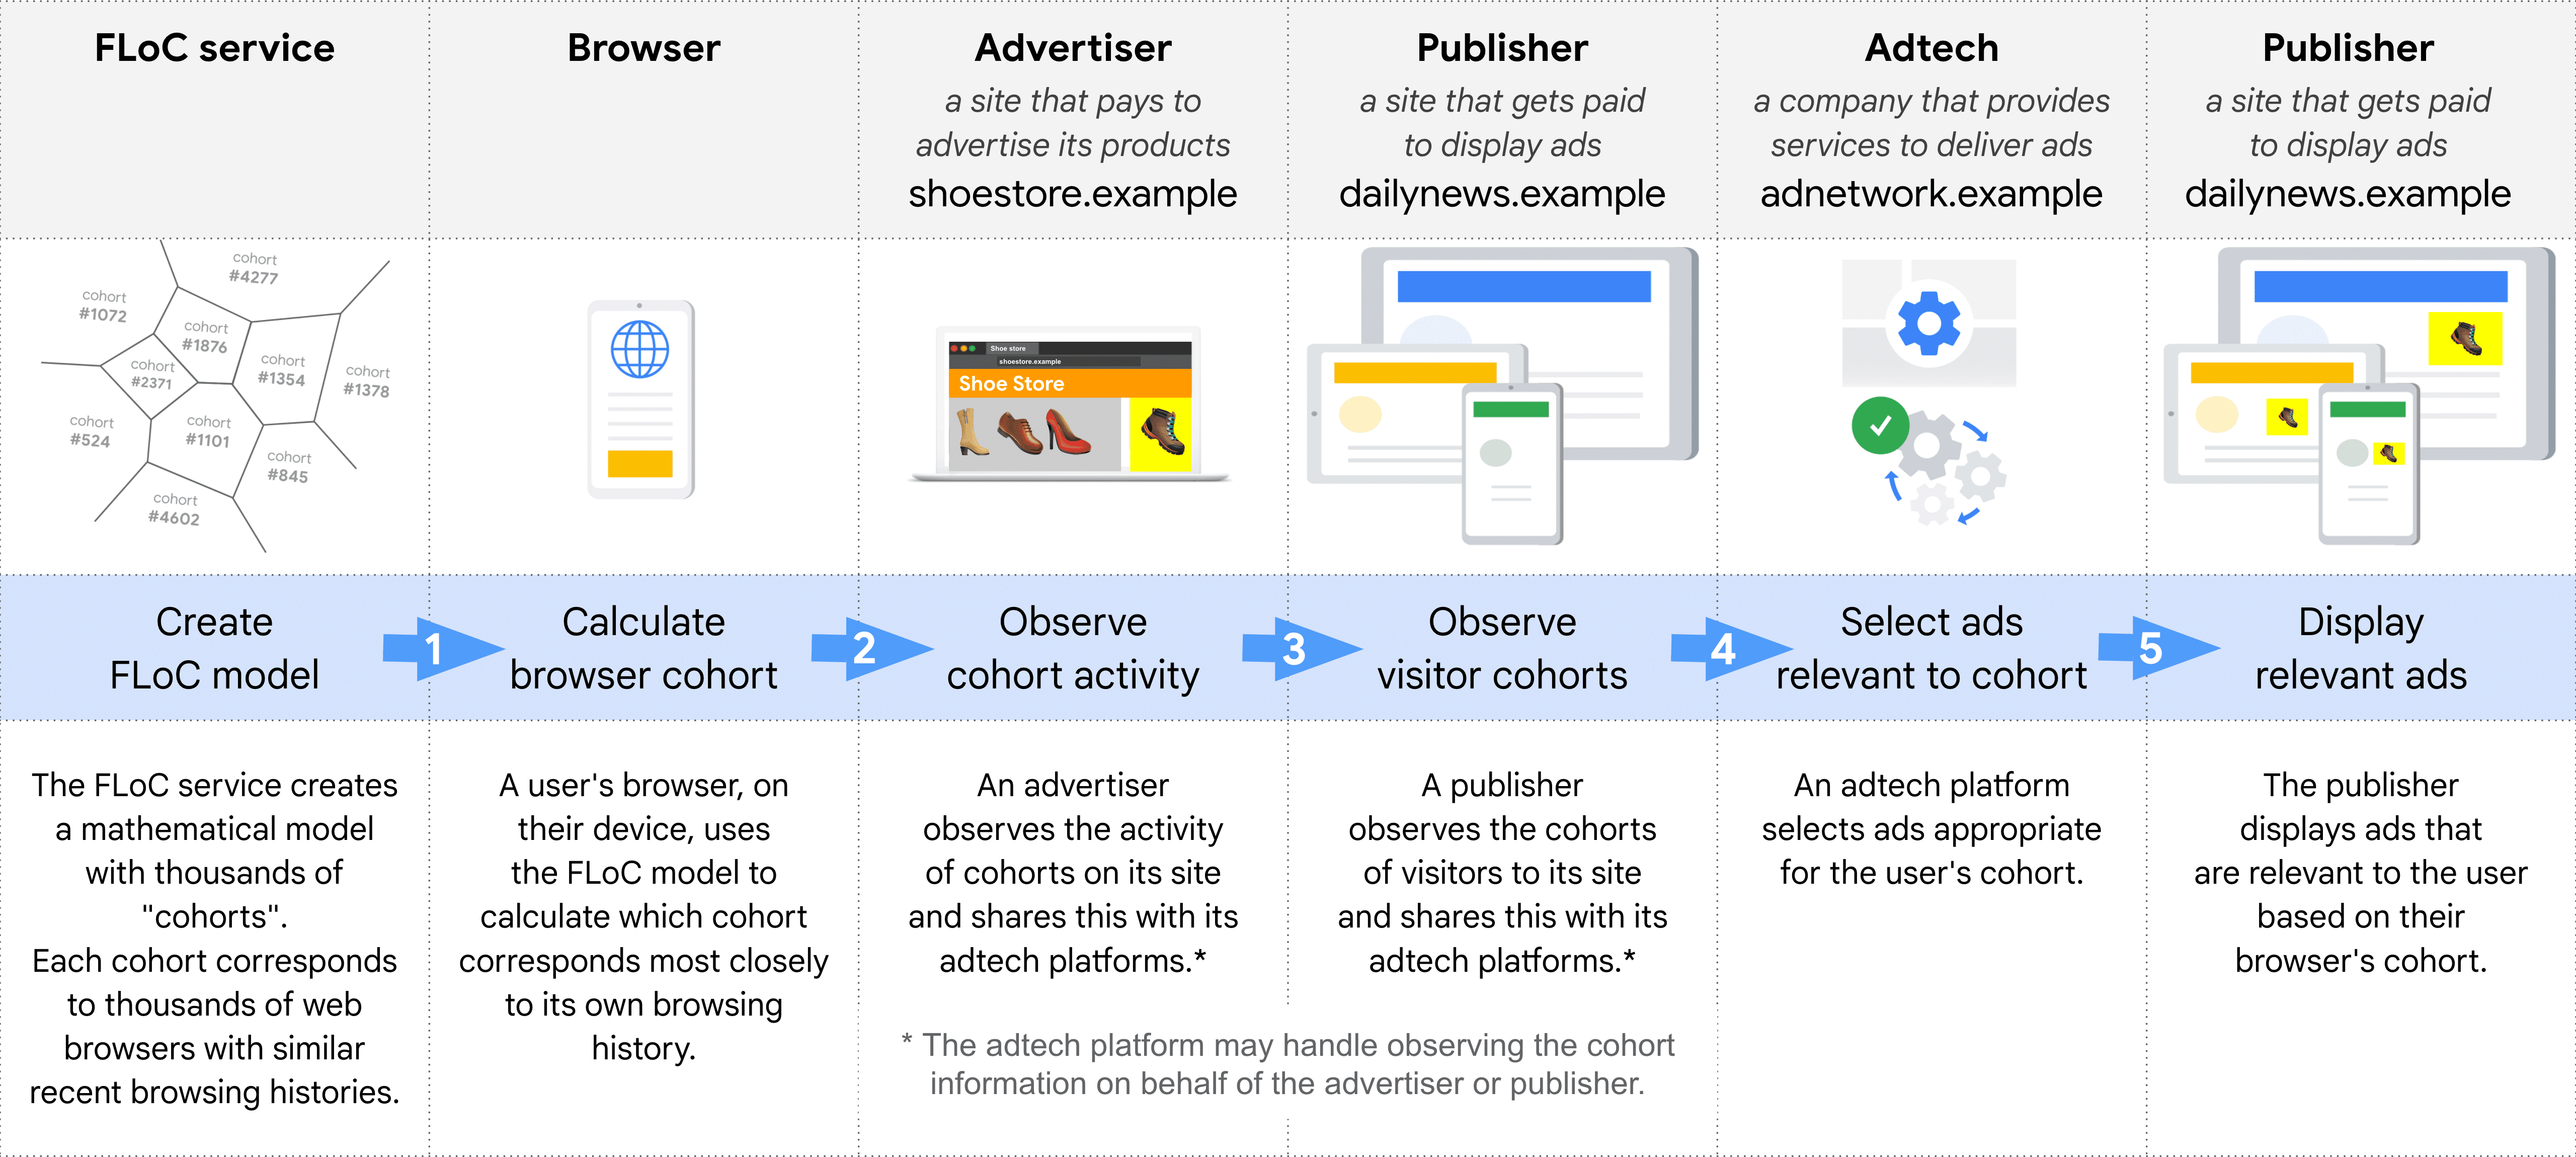 डायग्राम में, FLoC इस्तेमाल करके किसी विज्ञापन को चुनने और उसे डिलीवर करने के अलग-अलग चरणों के बारे में सिलसिलेवार तरीके से बताया गया है: FLoC सेवा, ब्राउज़र, विज्ञापन देने वाले, पब्लिशर (कोहॉर्ट पर नज़र रखने के लिए), Adtech, पब्लिशर (विज्ञापन दिखाने के लिए)